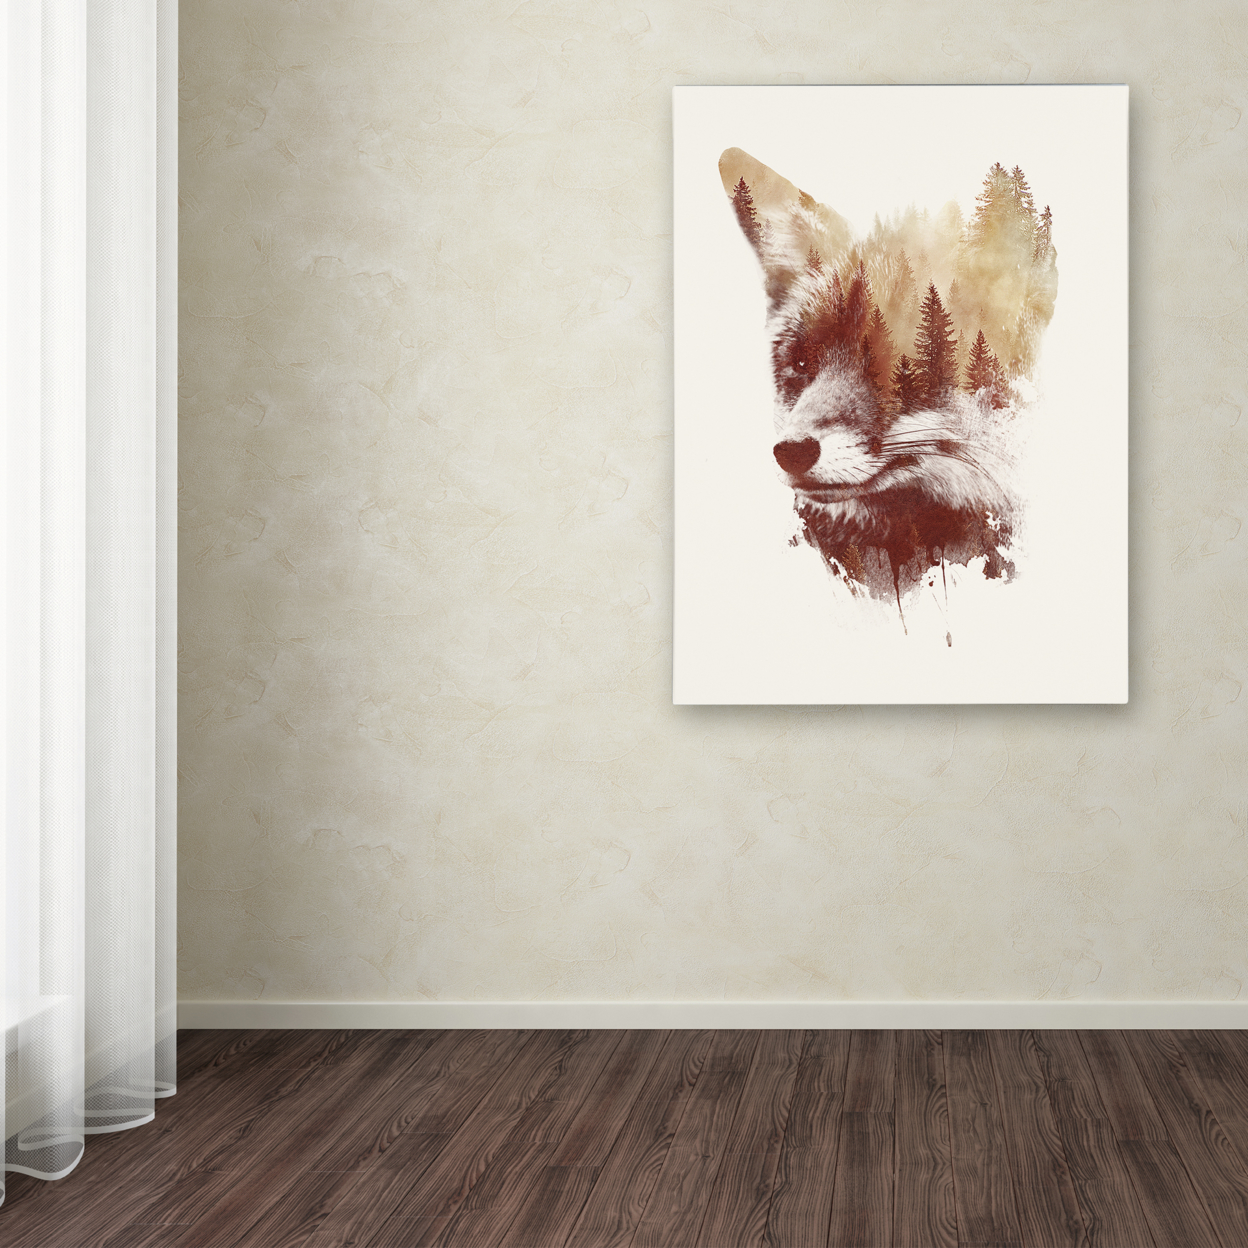 Robert Farkas 'Blind Fox' Canvas Art 18 X 24